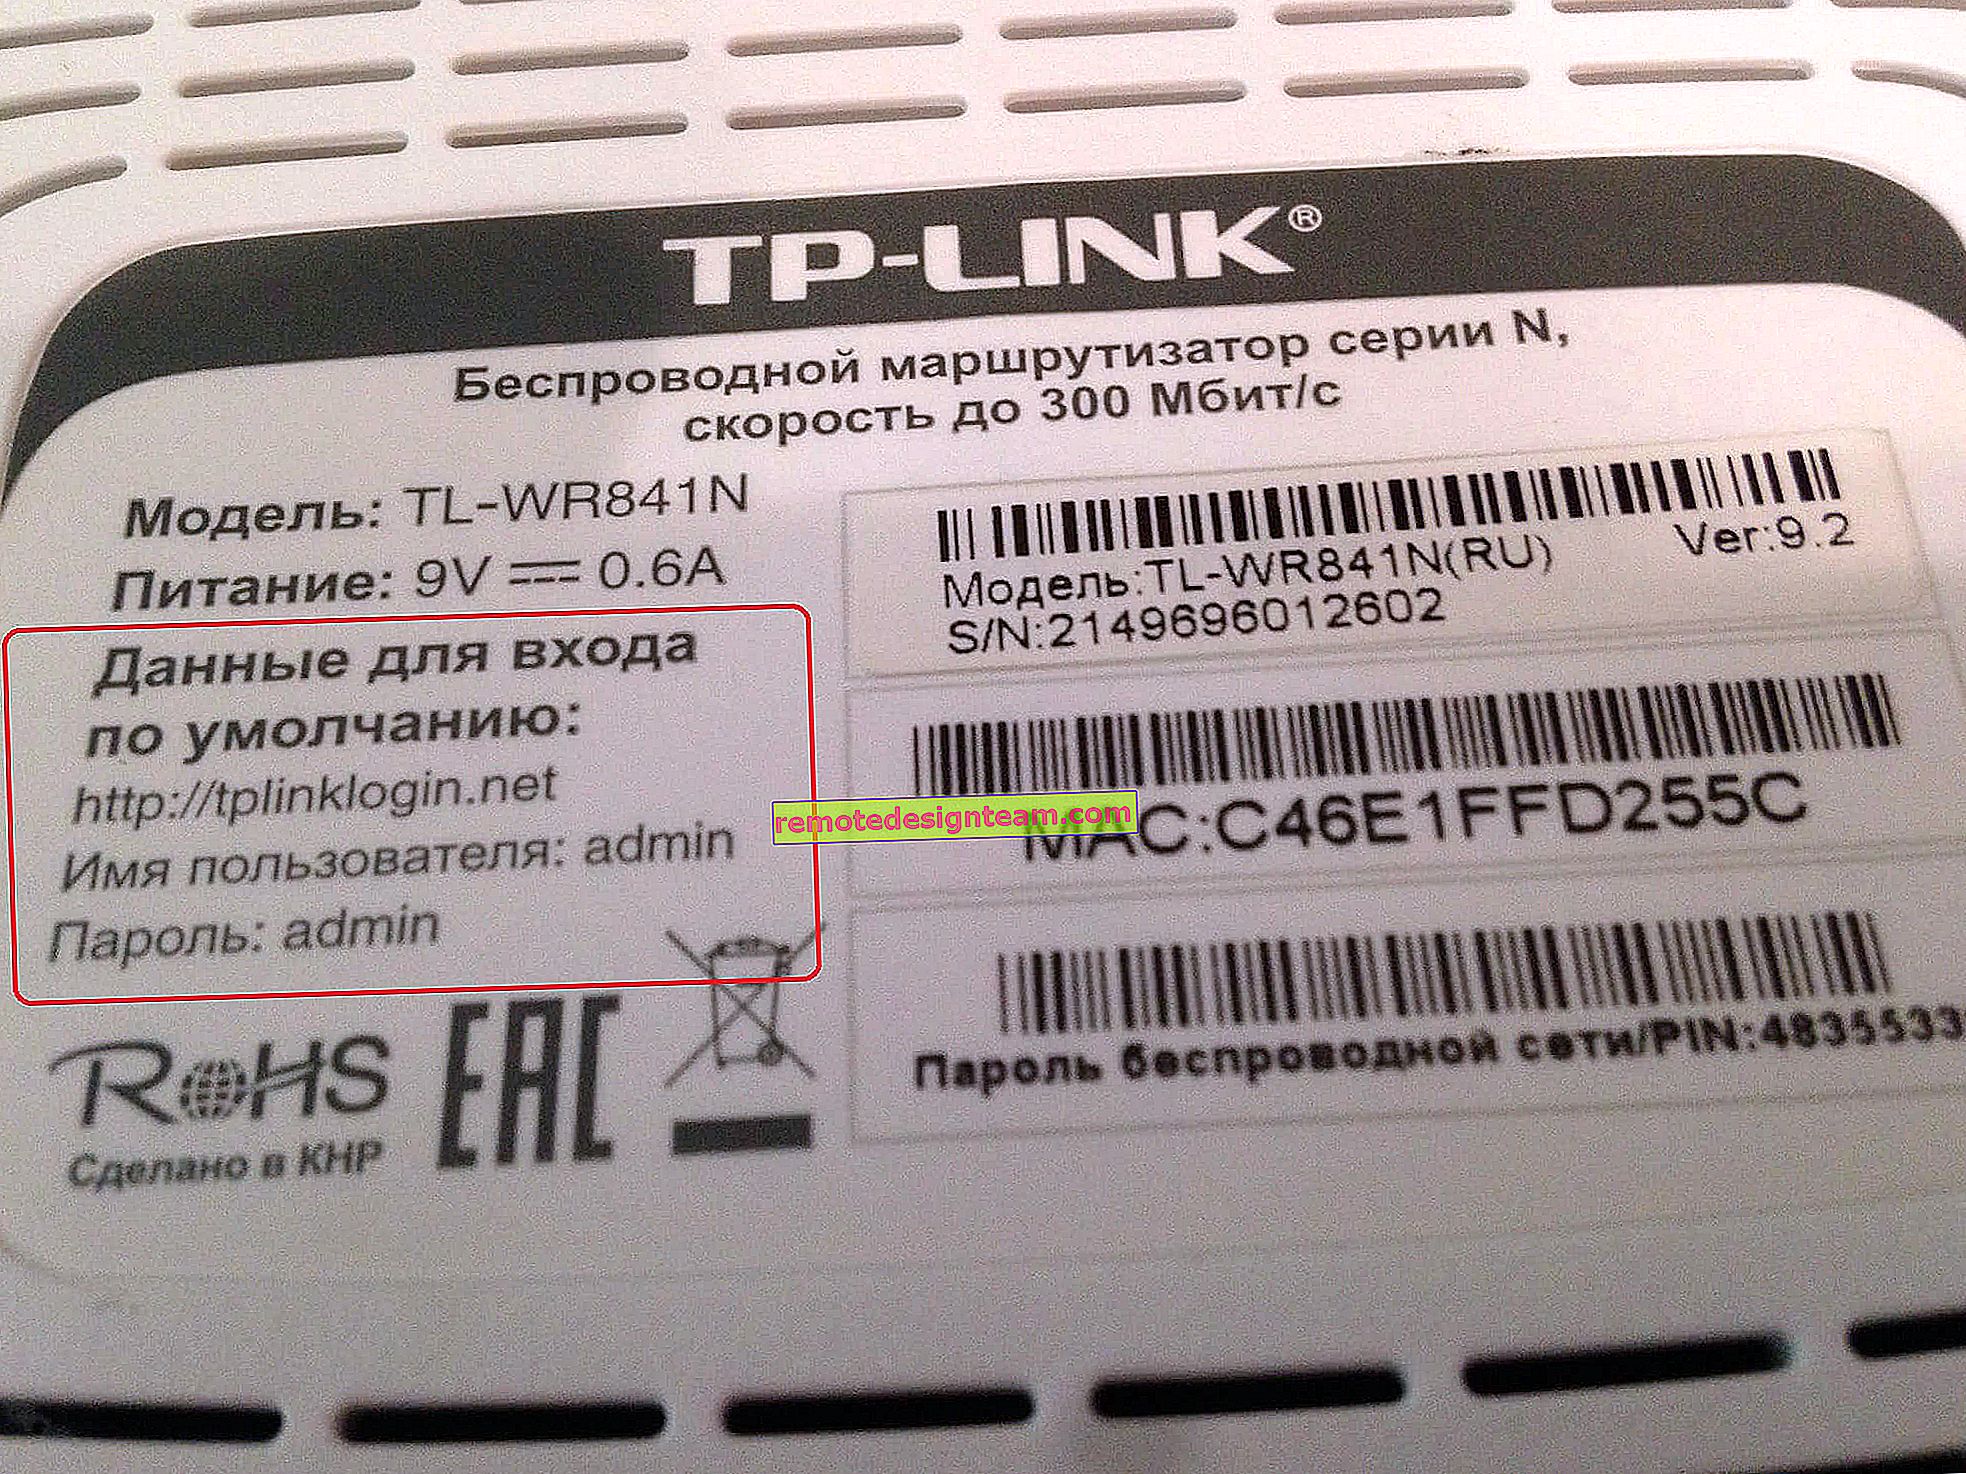 Як поміняти, або поставити пароль Wi-Fi на TP-Link